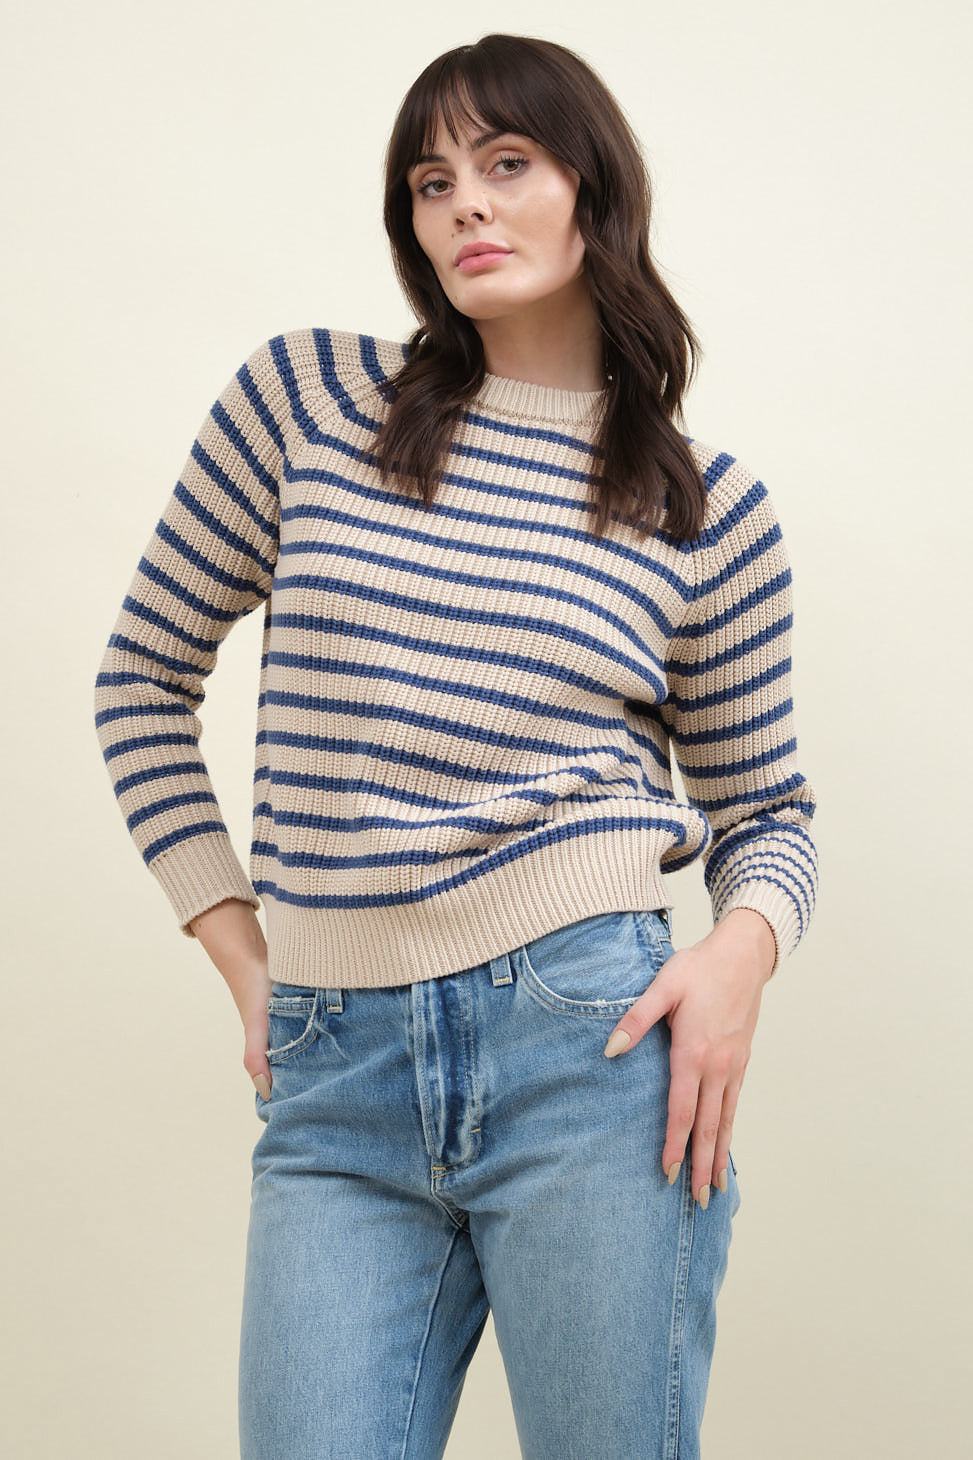 Demylee Phoebe Stripe Sweater in Natural/Denim Blue